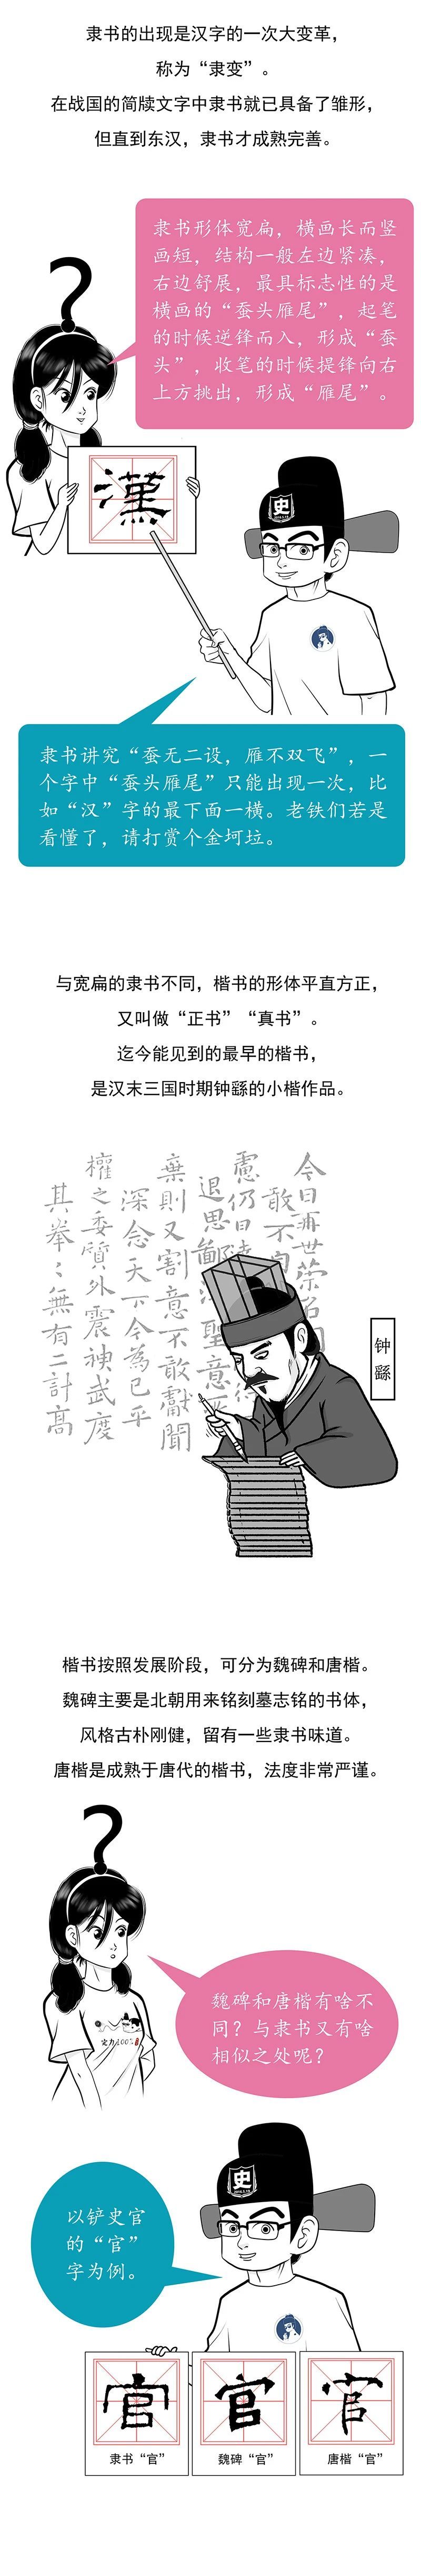 书法简史 为何汉字的书写 能成为一门艺术 腾讯网